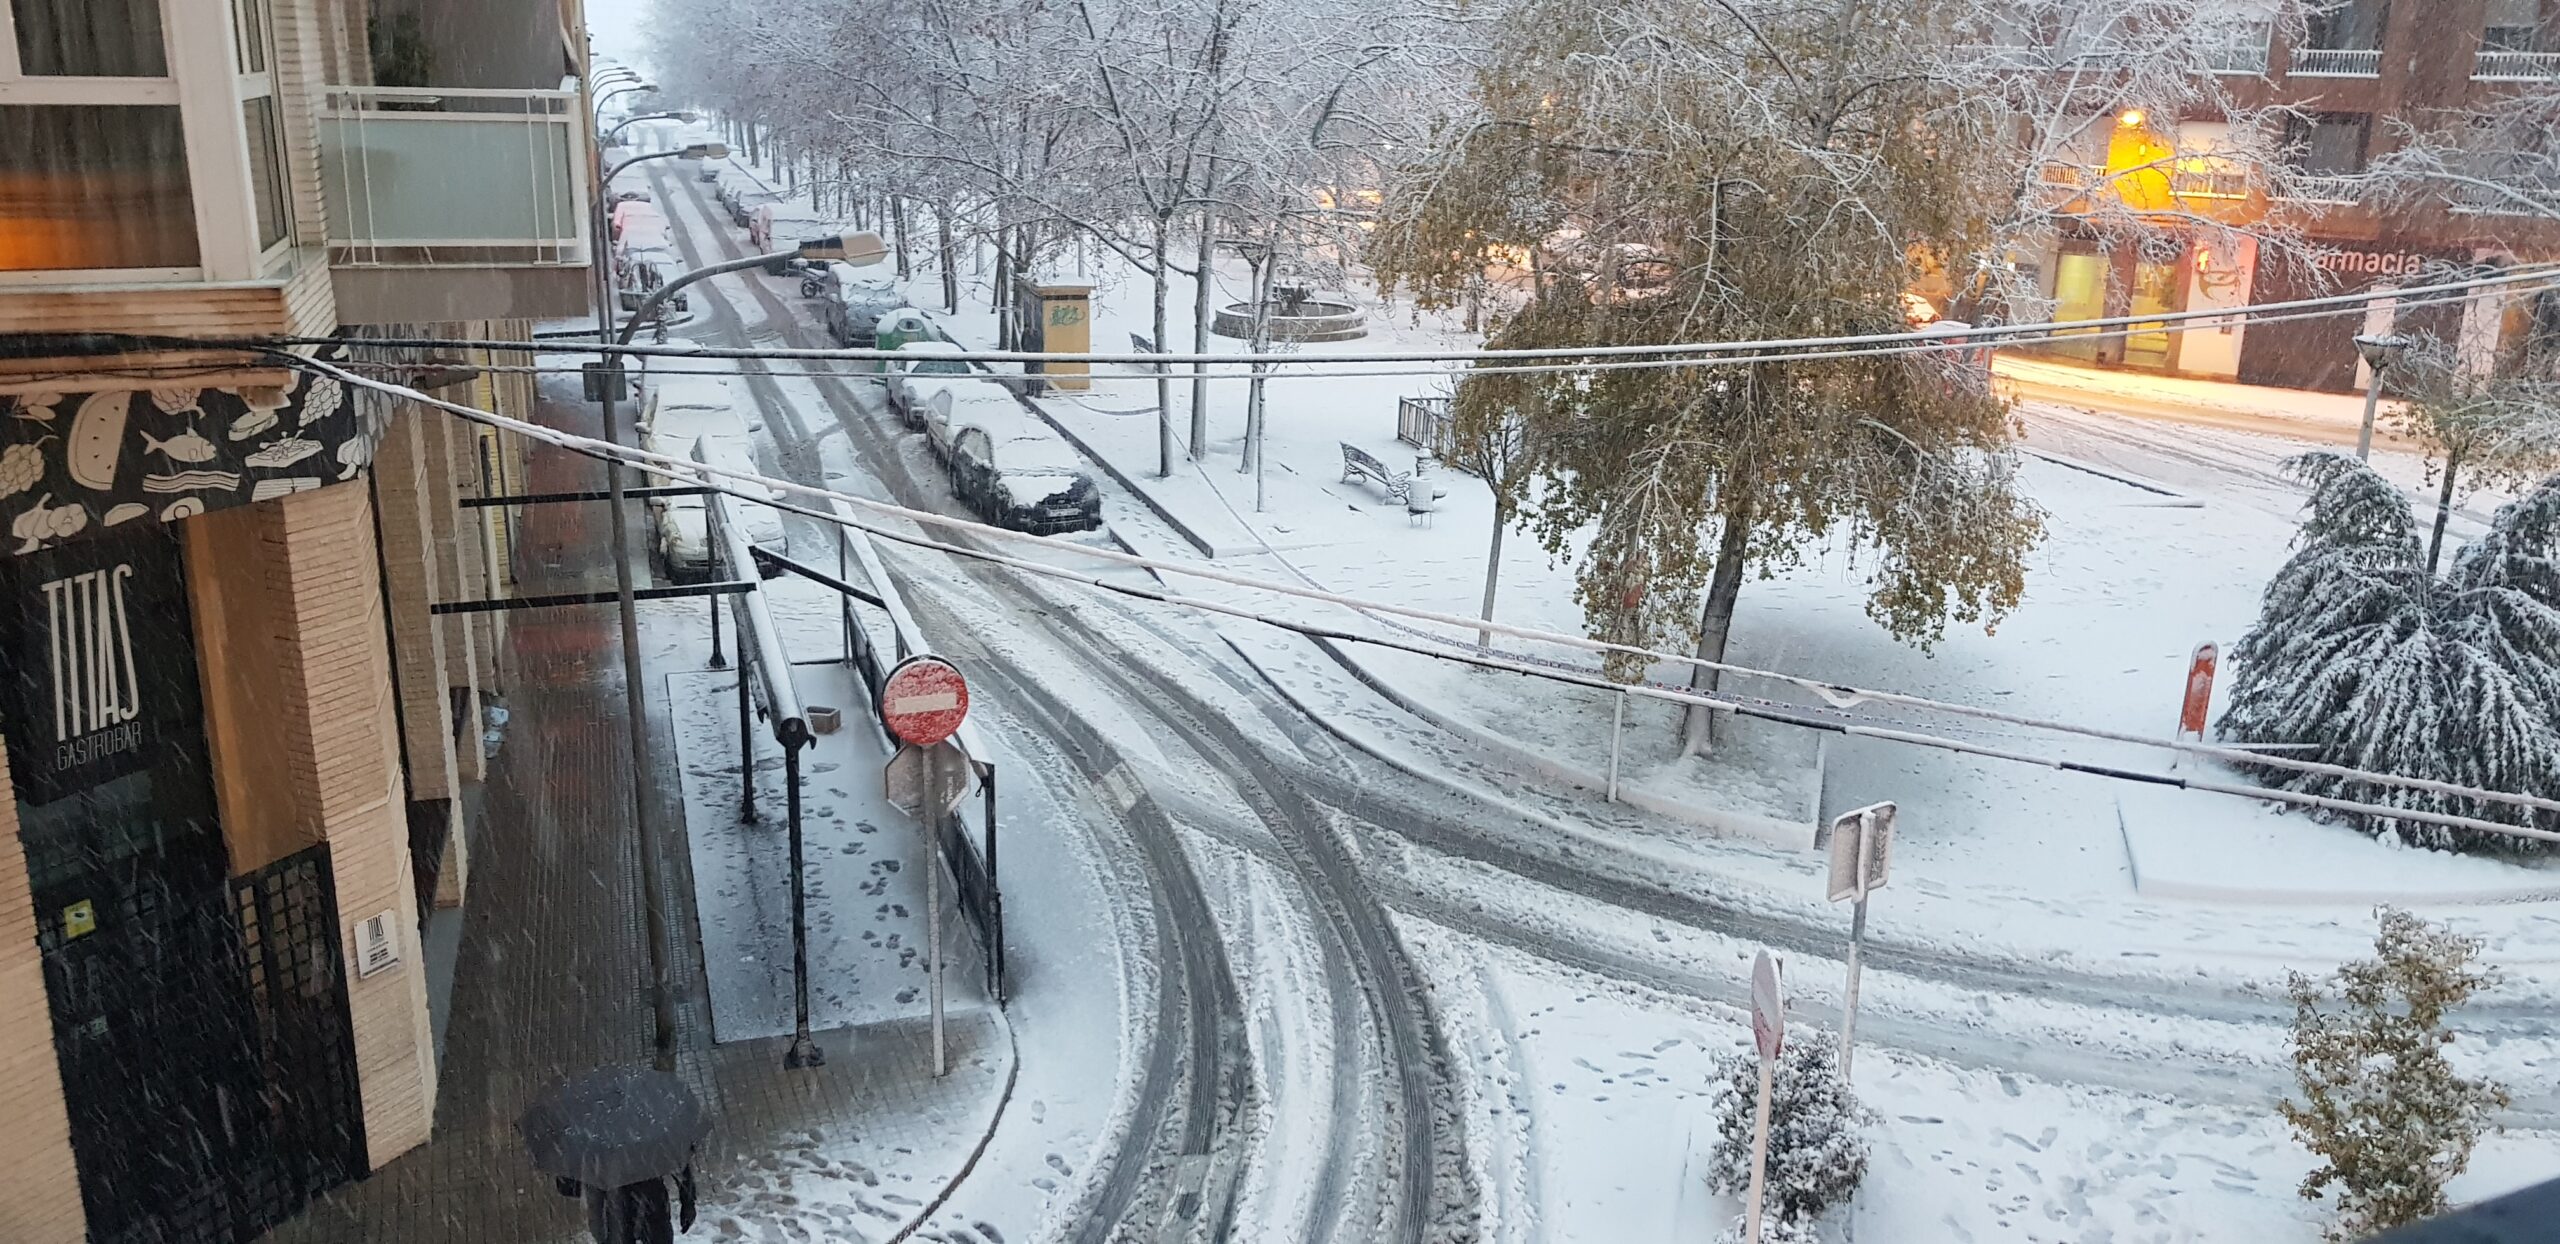 Suspenden las consultas en el Centro Sanitario Integrado de Villena por la nieve